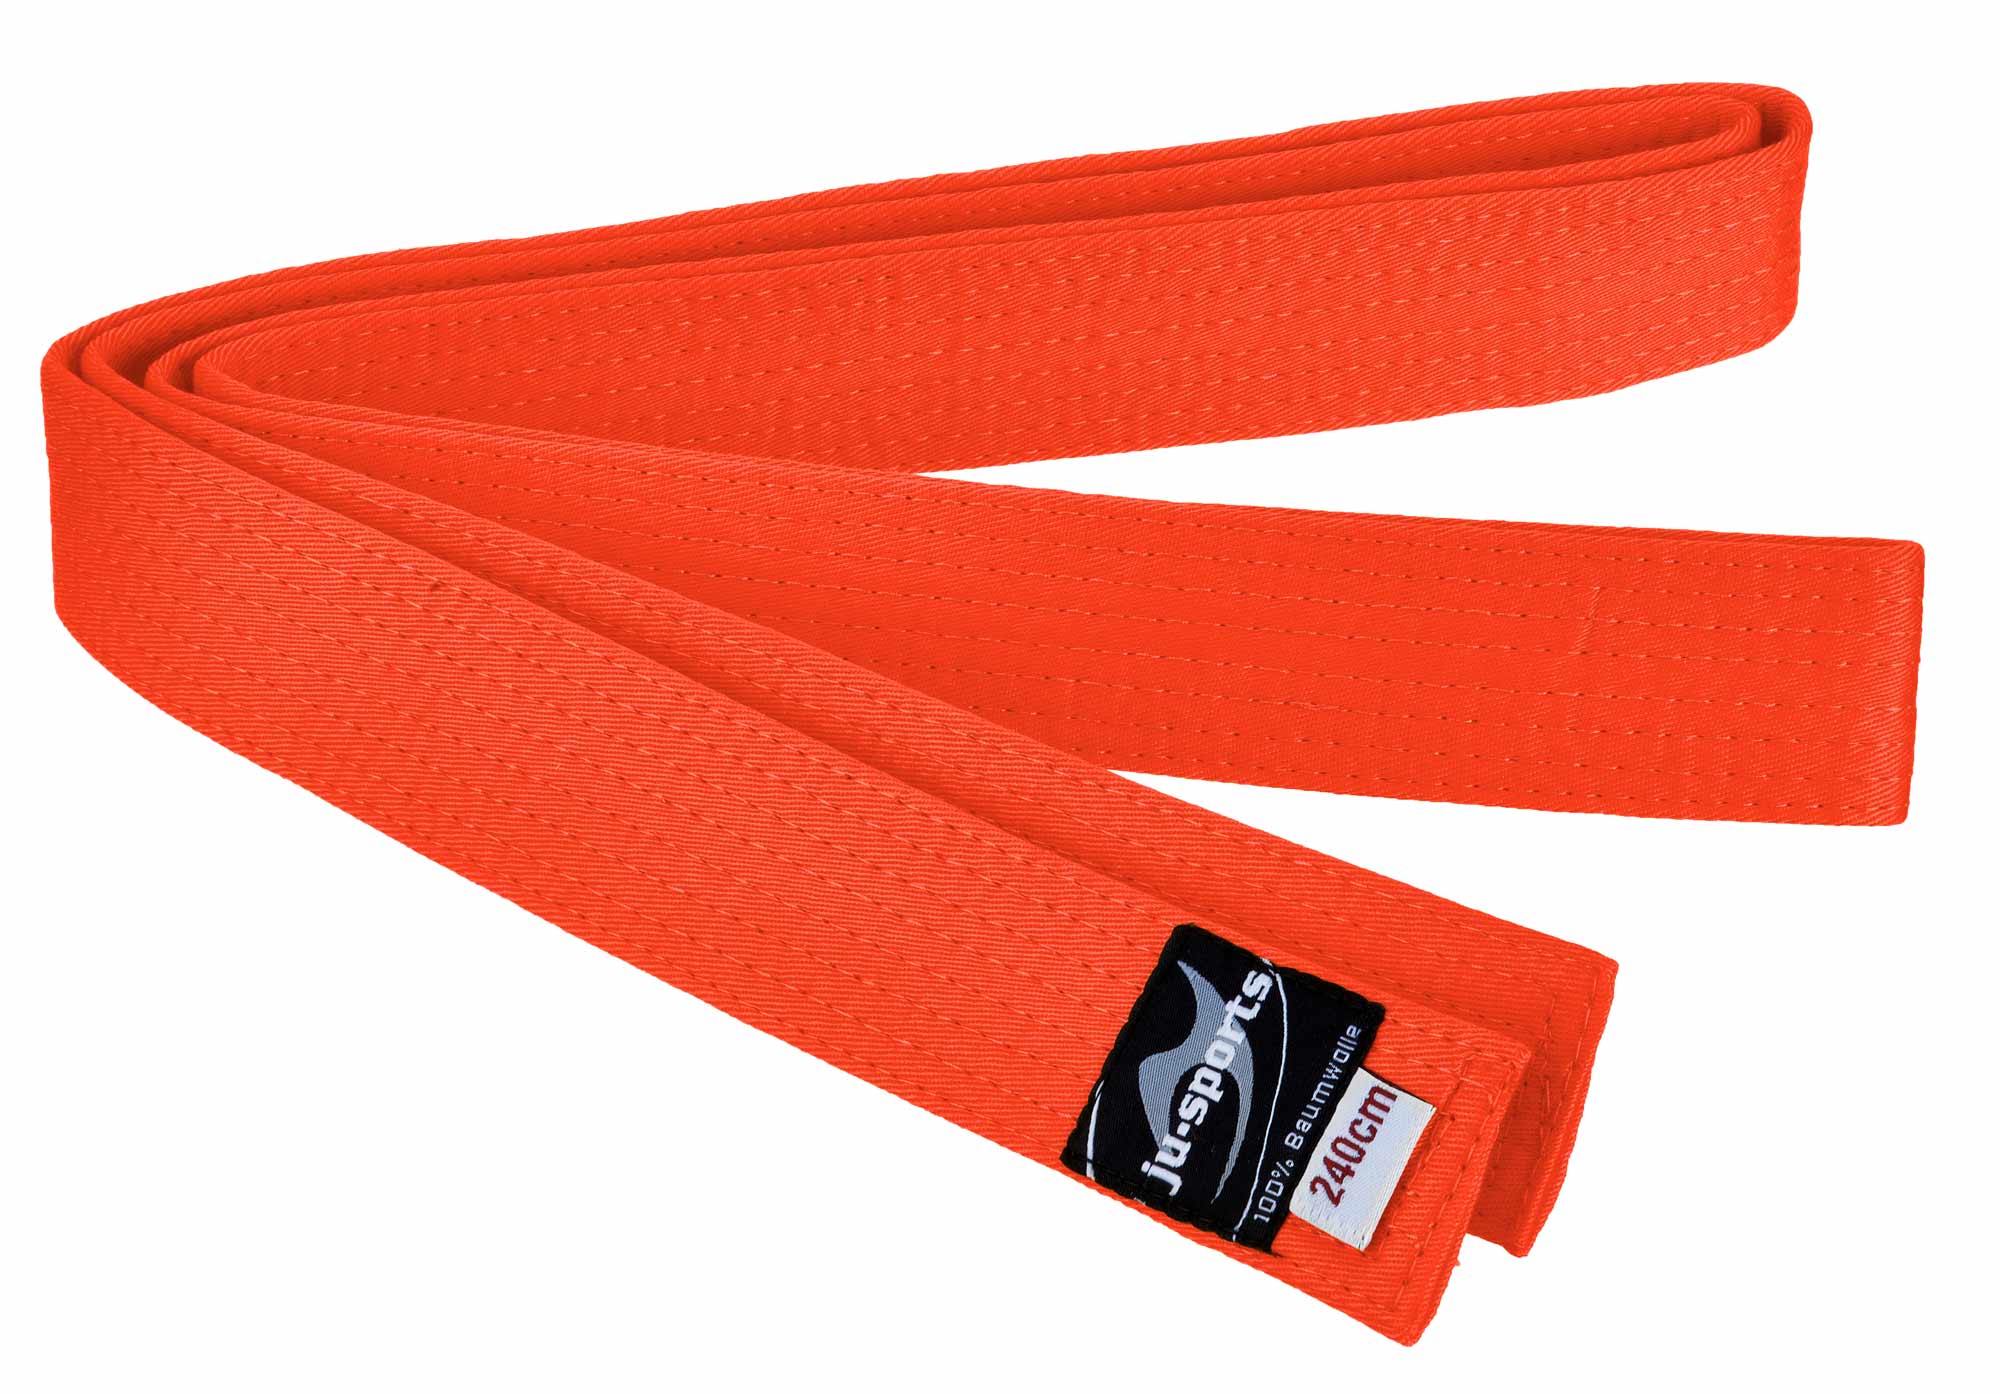 Ju-Sports budo belt orange